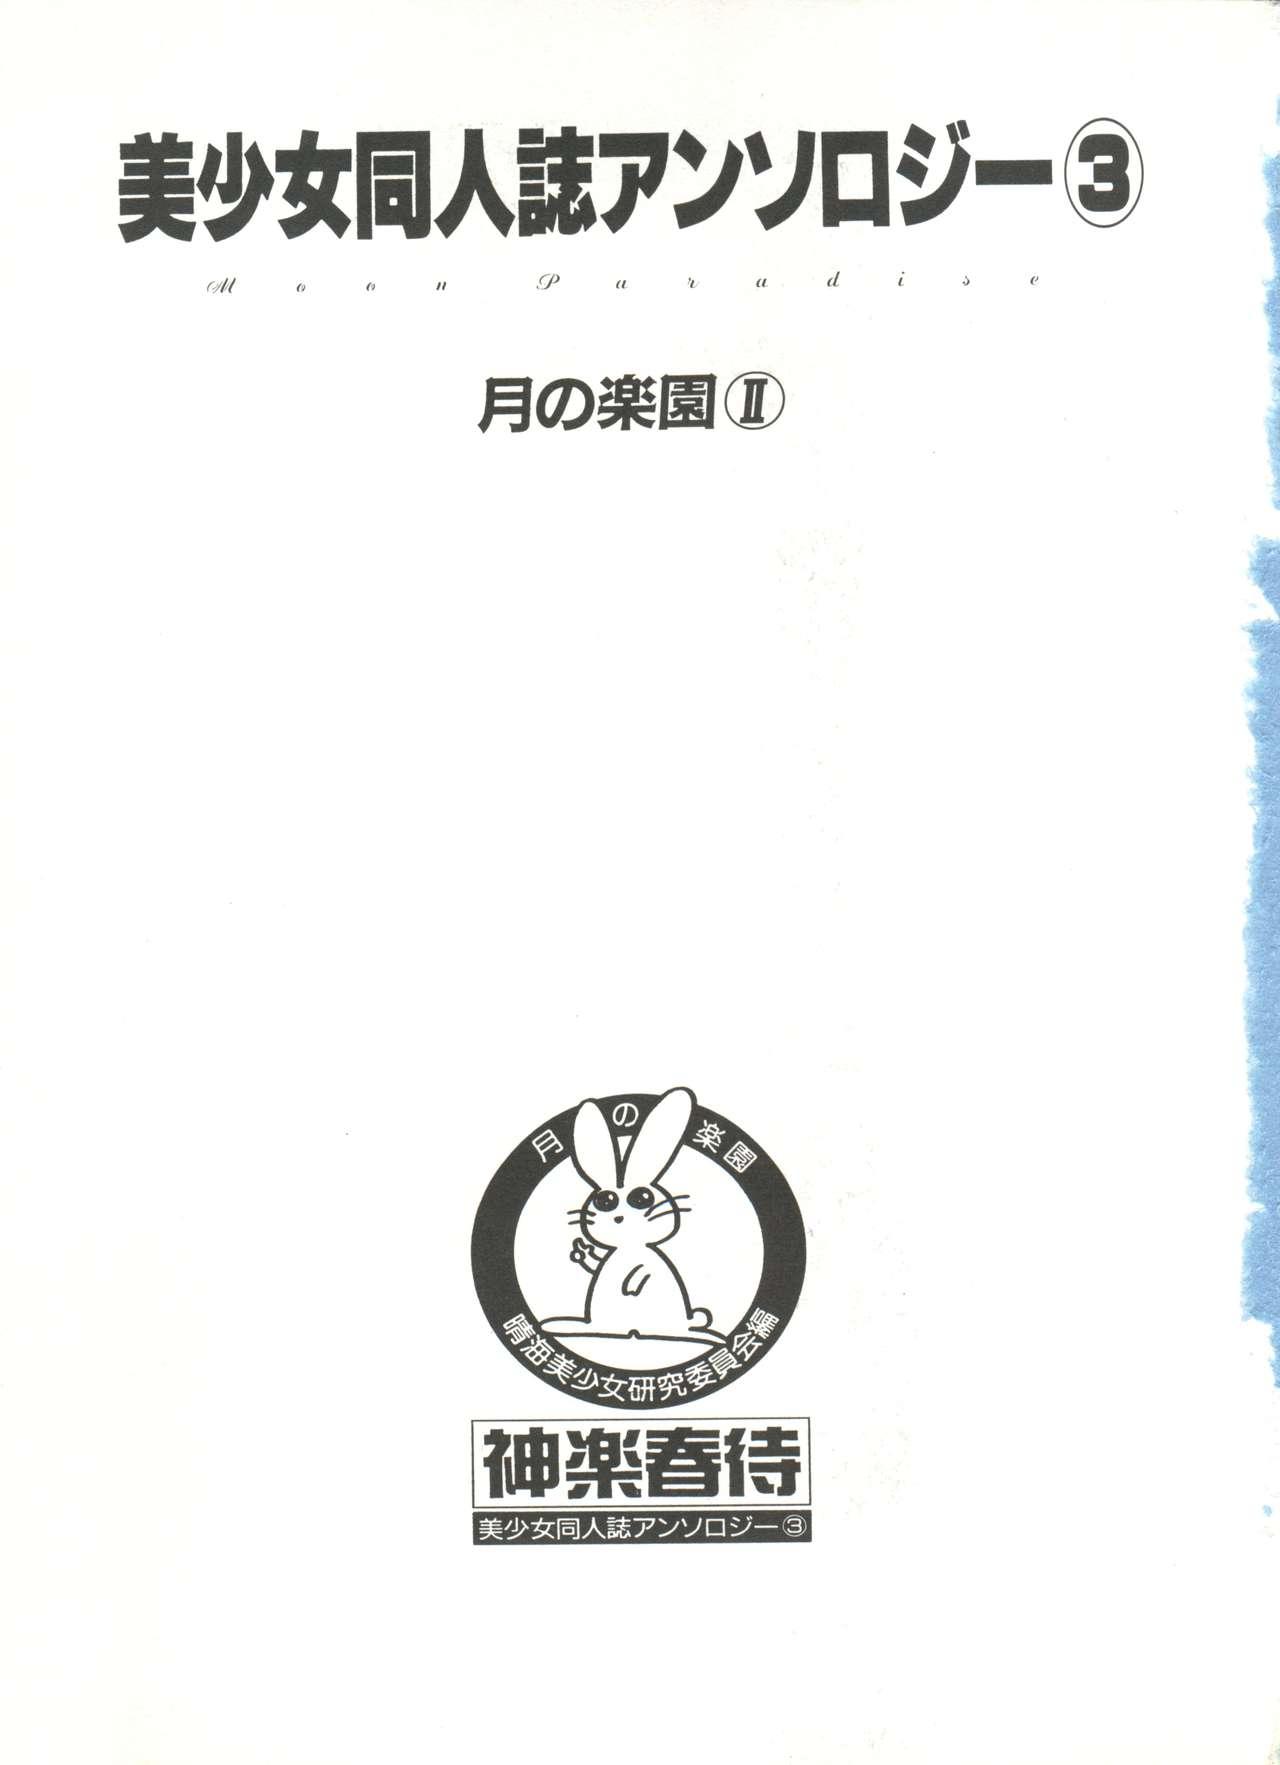 Bishoujo Doujinshi Anthology 3 - Moon Paradise 2 Tsuki no Rakuen 5